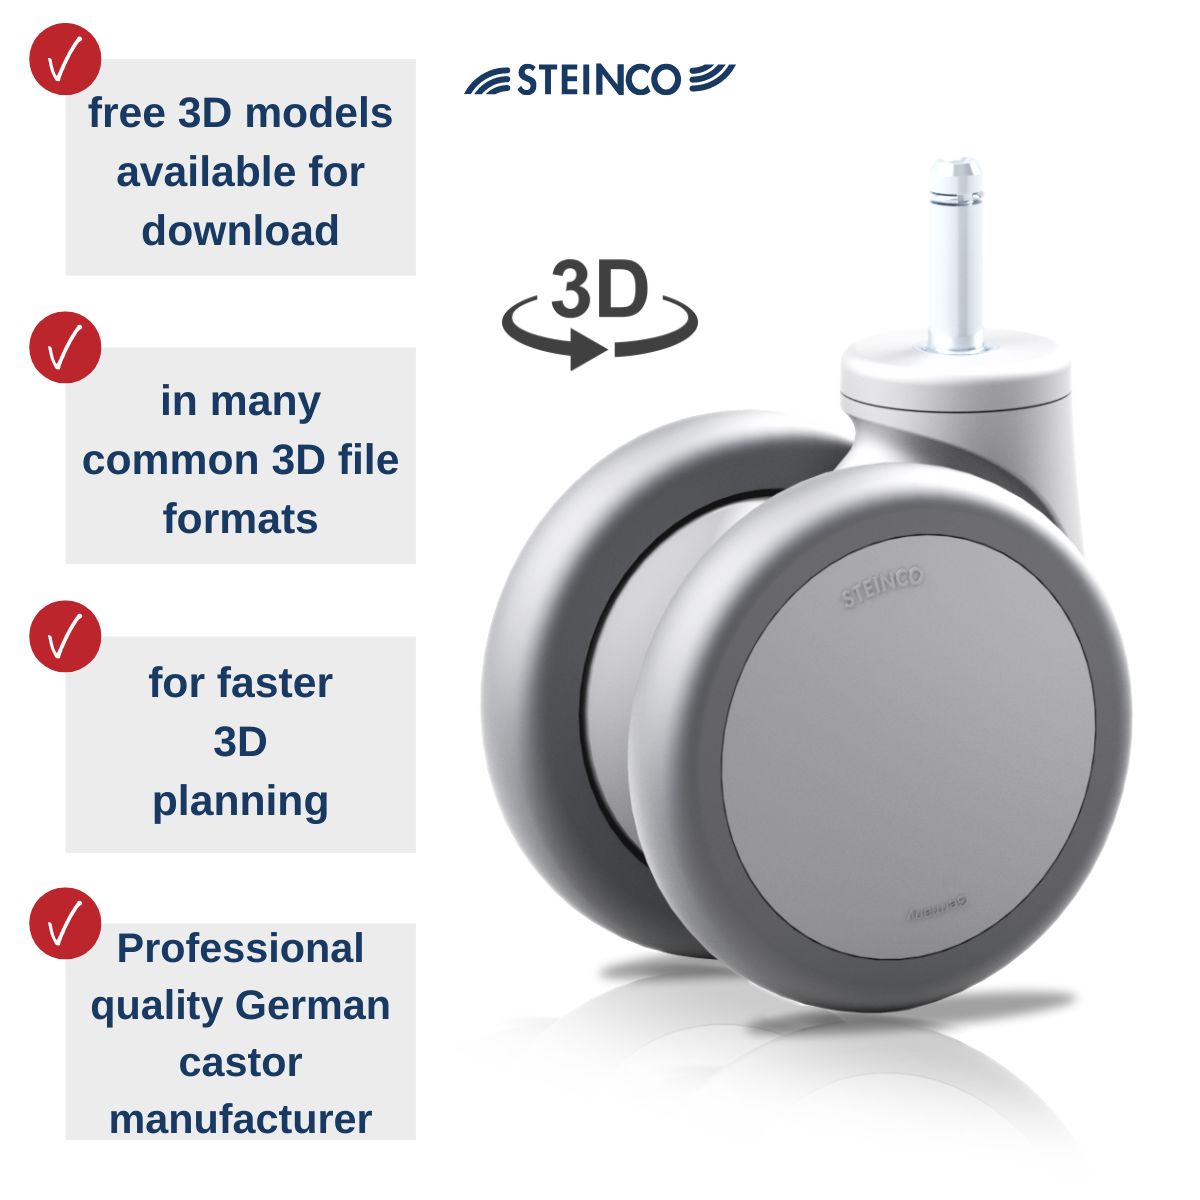 Castors & Wheels 3D Models for CAD Planning free 3D Models for Download - STEINCO Swivel Castors, Twin Castors, Fixed Castors, Apara Castors & Transport Castors